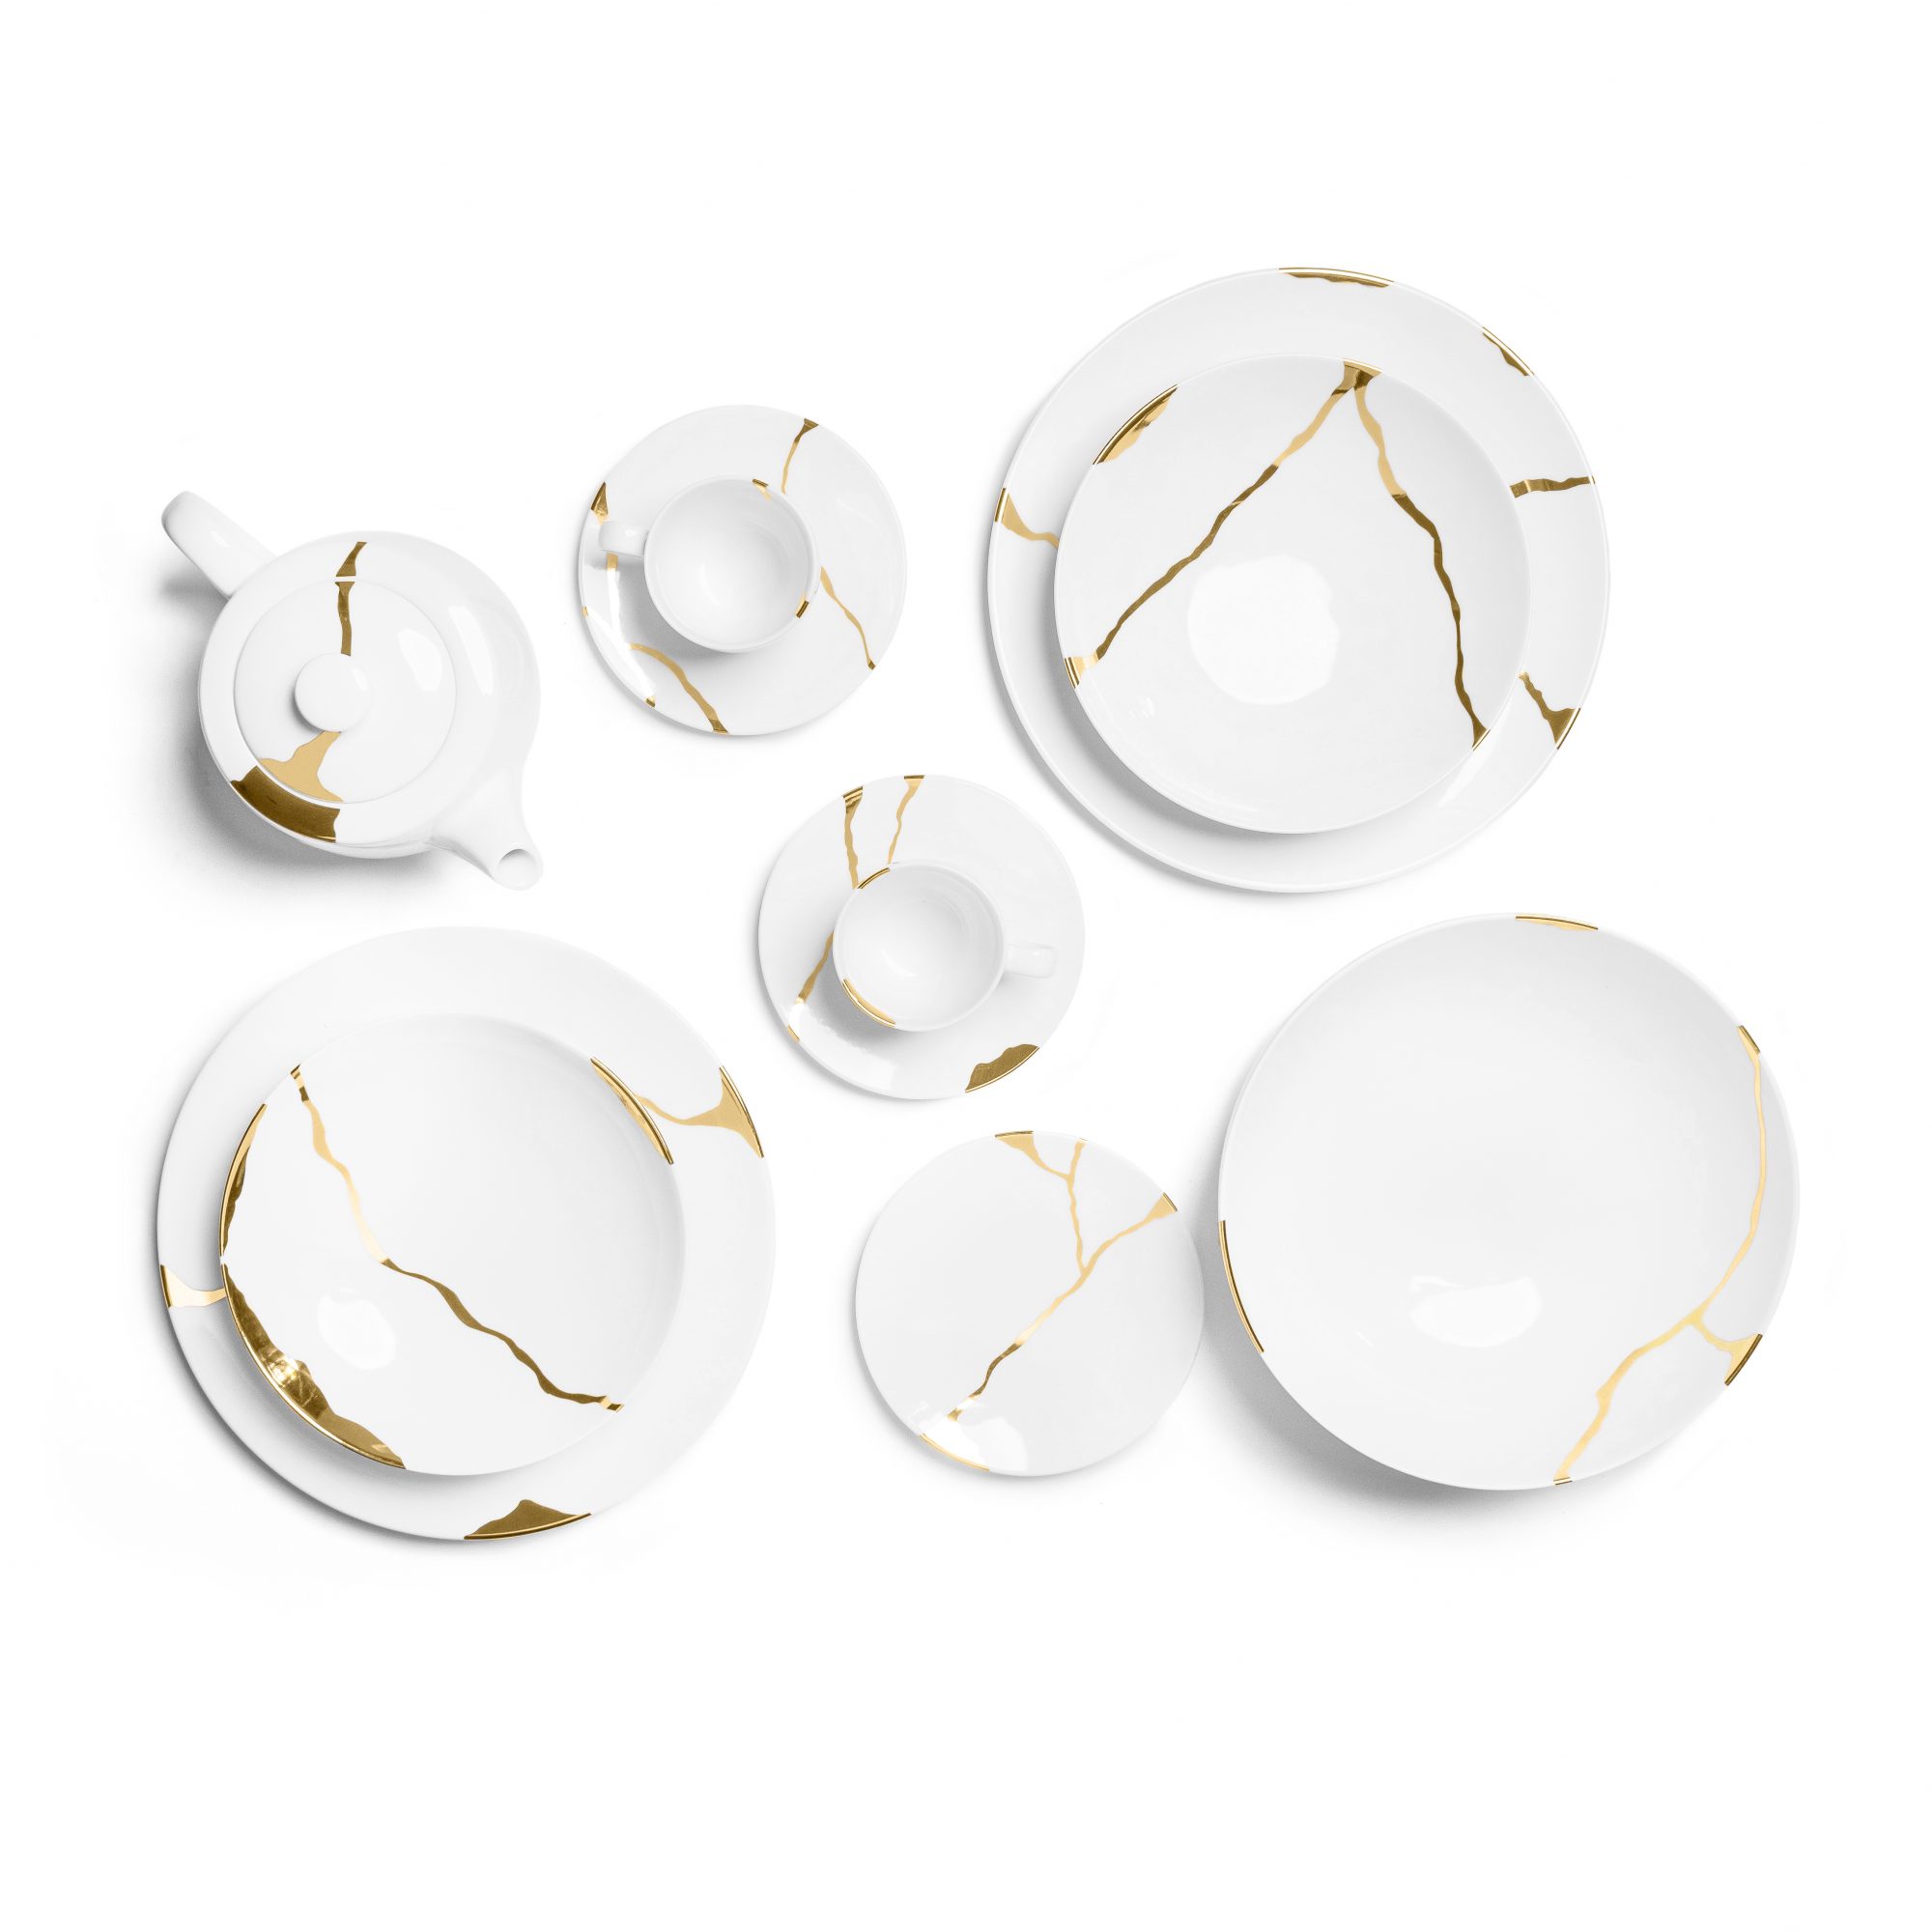 Kintsugi Collection Feines Bone China Porzellan Set: Teller, Teetassen/Kanne, Schale